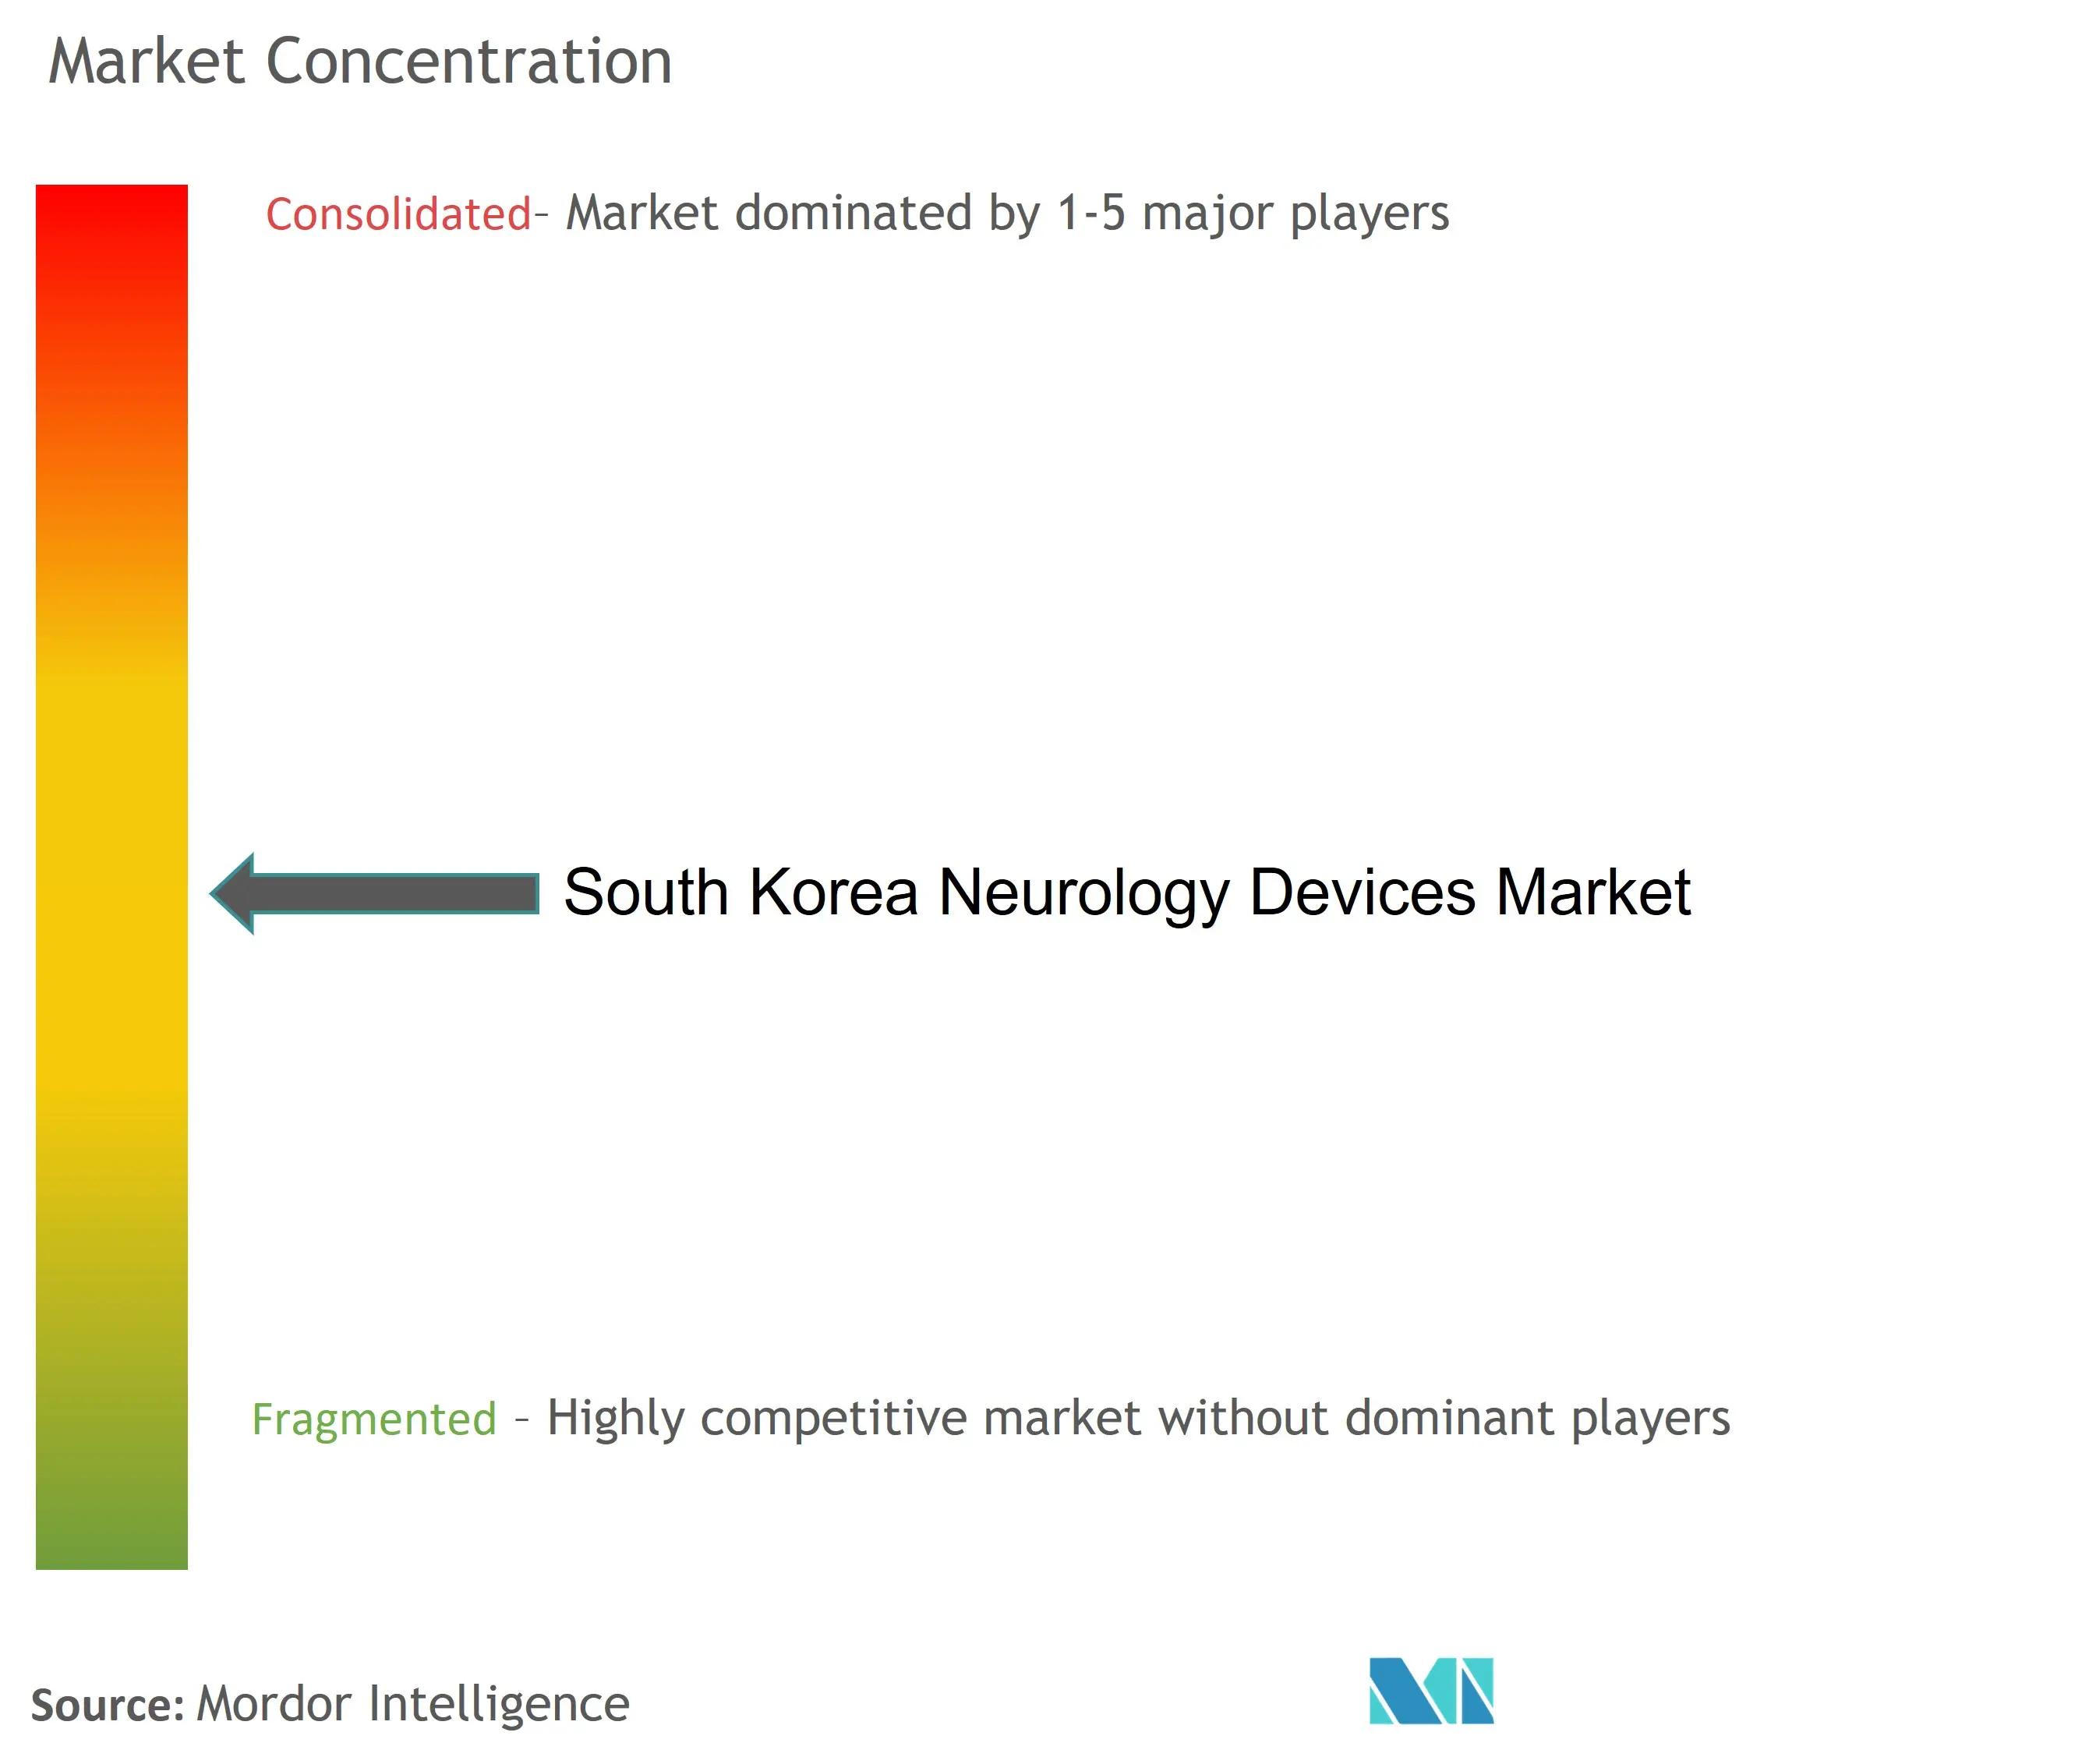 Marktkonzentration für neurologische Geräte in Südkorea